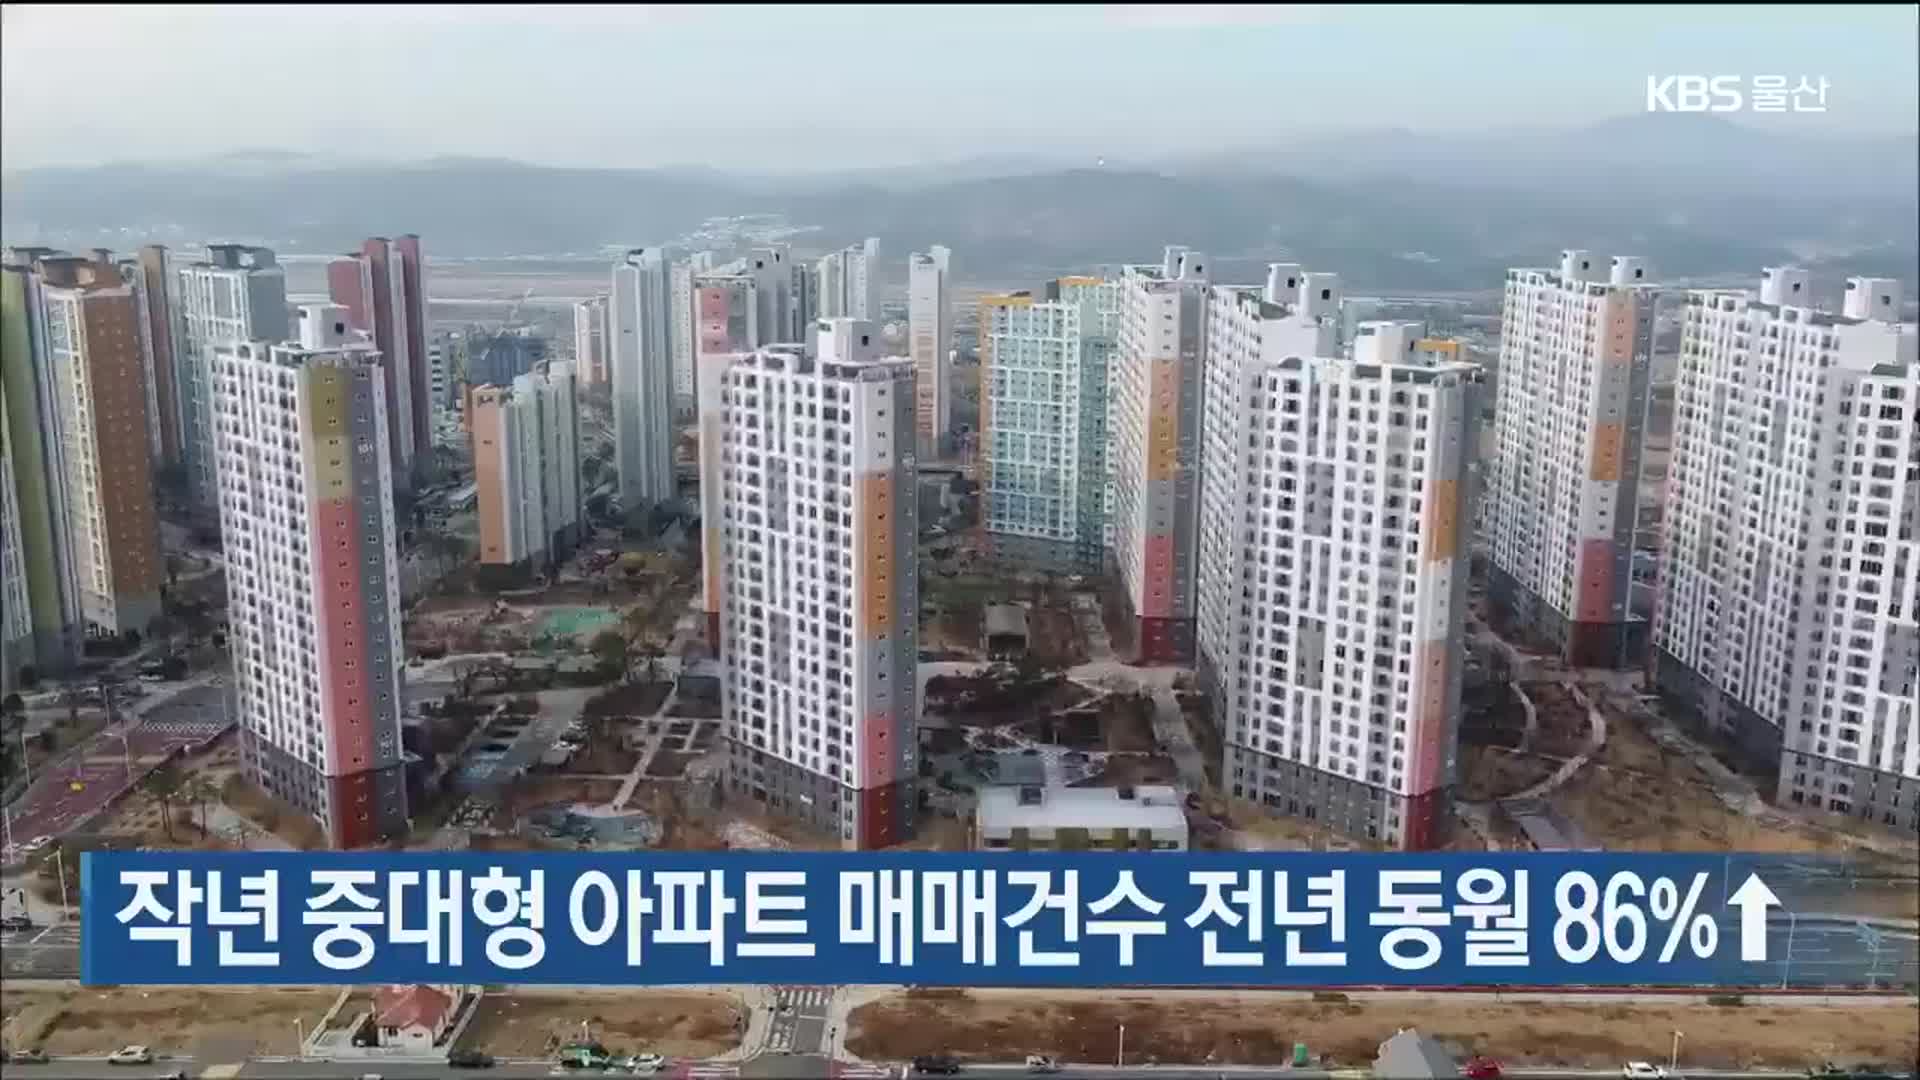 울산 작년 중대형 아파트 매매건수 전년 동월 86%↑